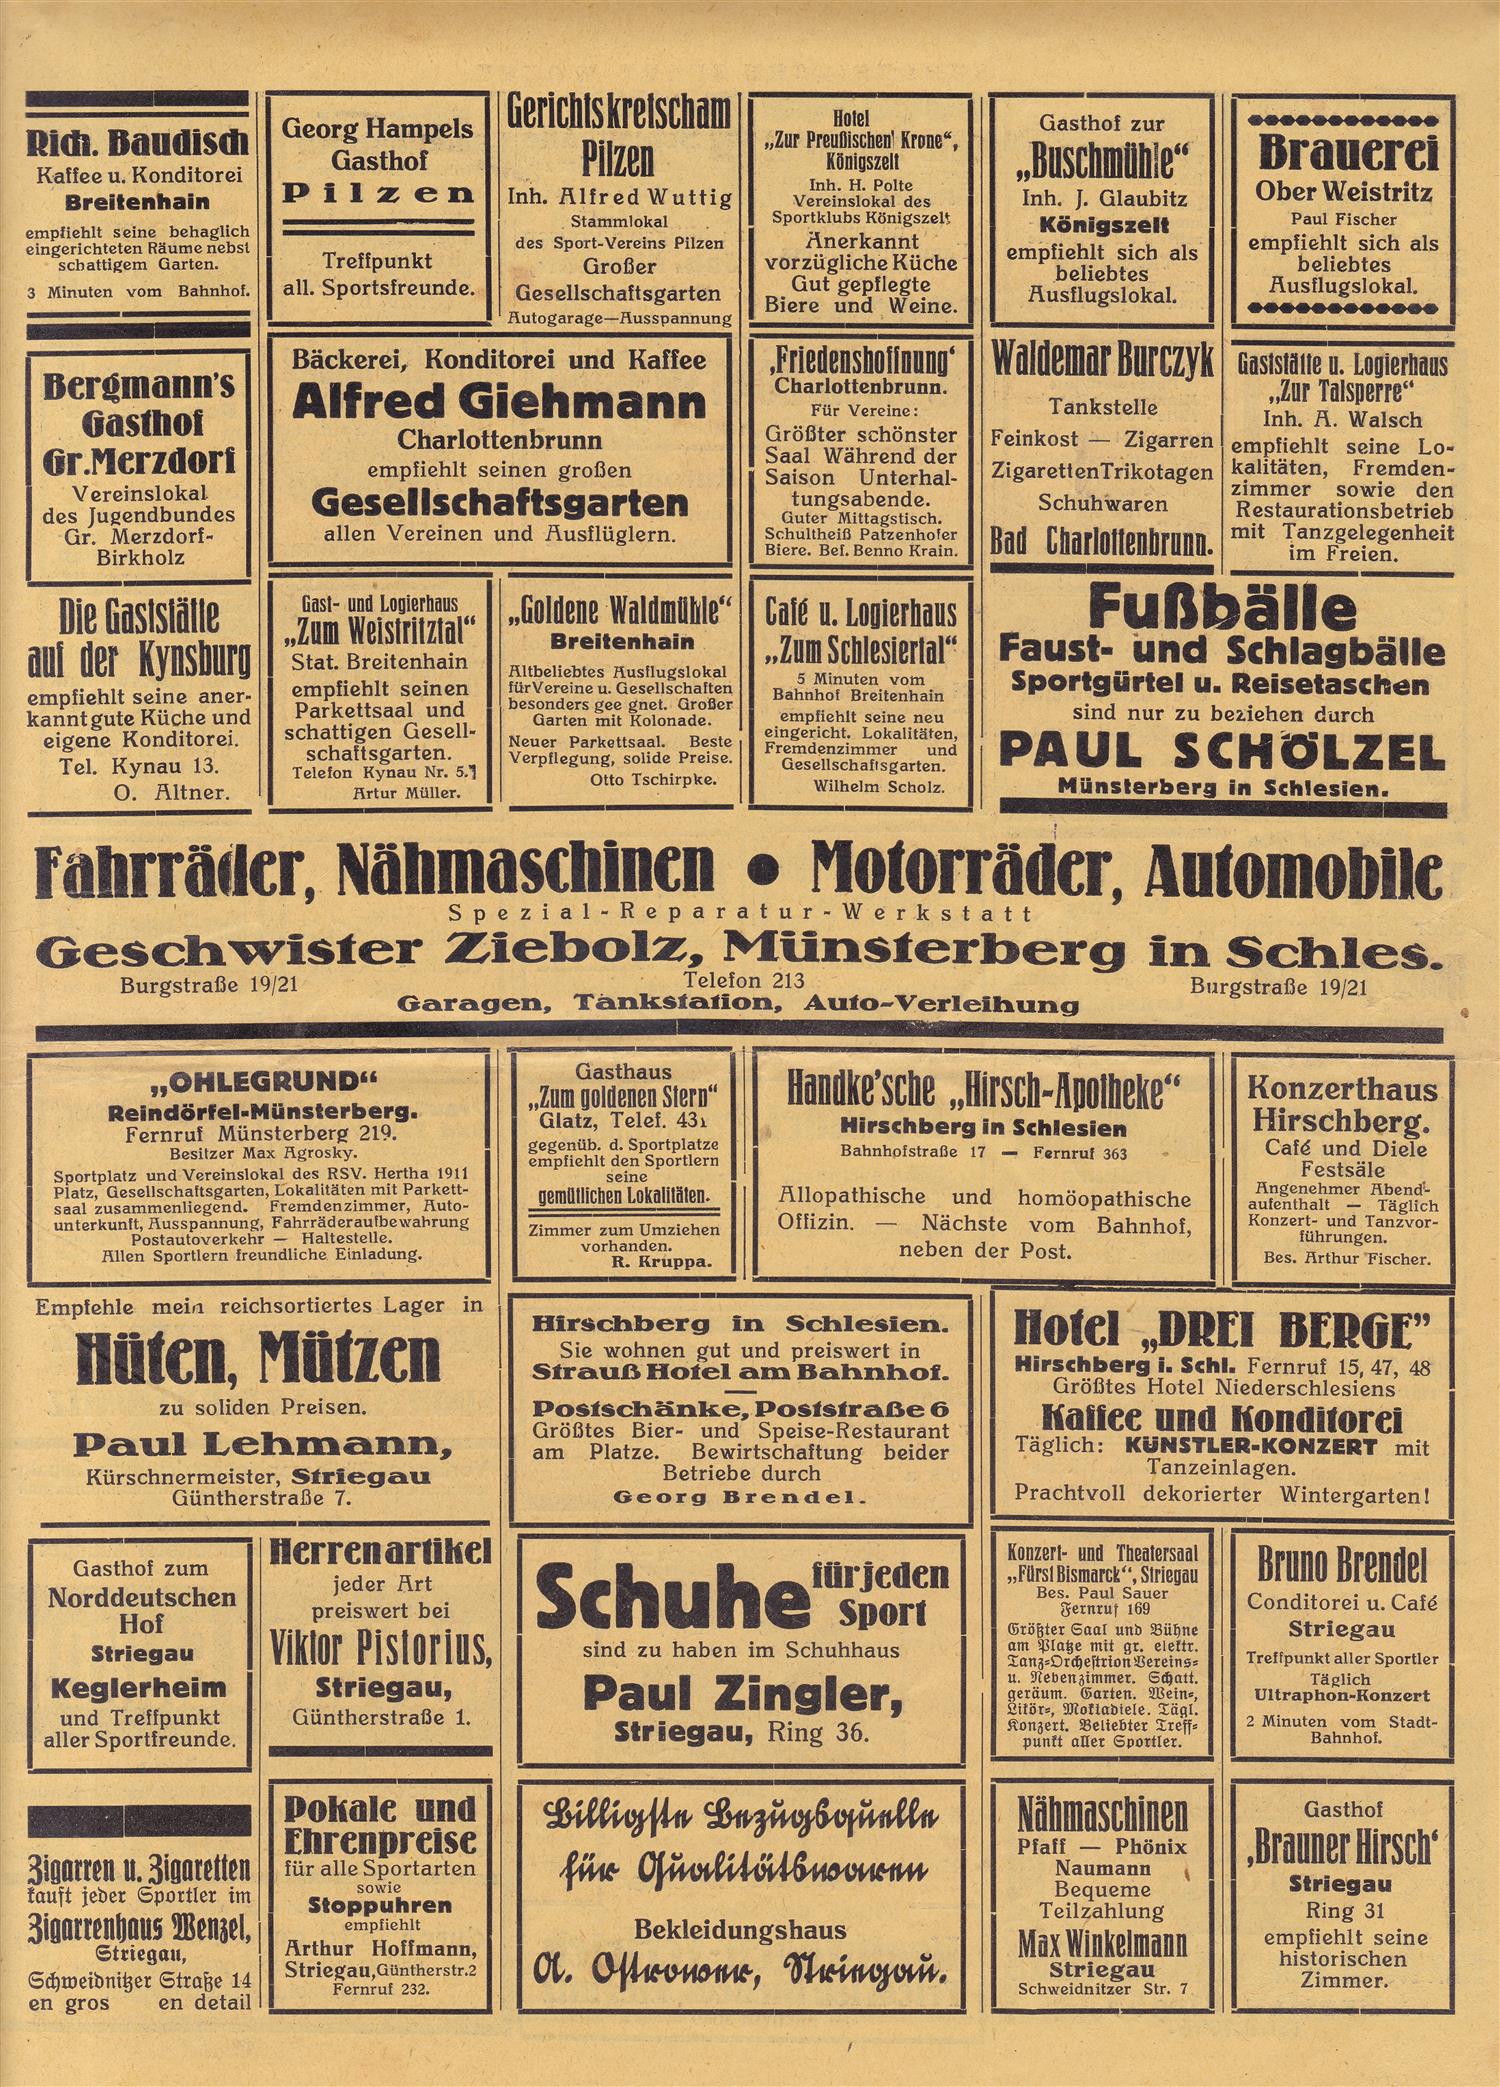 Slesiche Sport Woche 5 07 1927 (1)